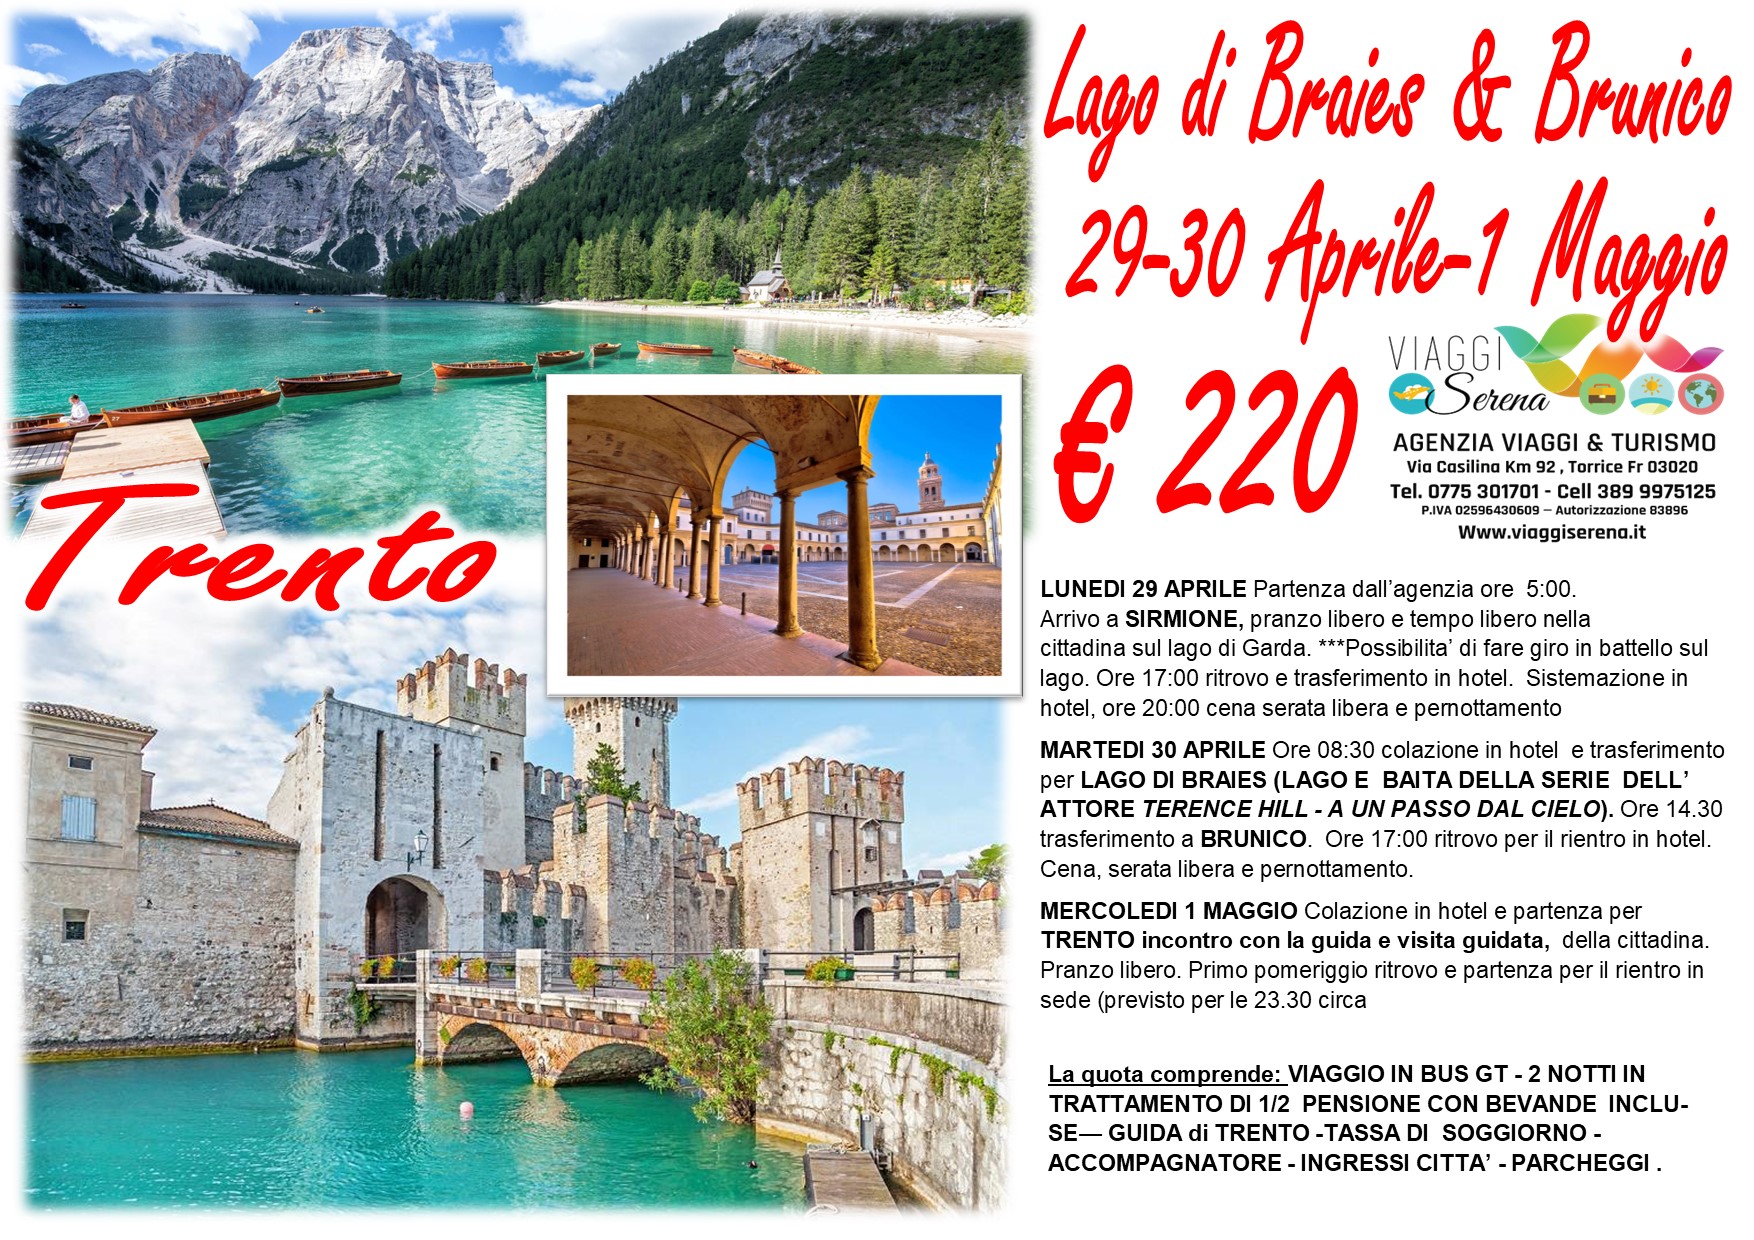 Viaggi di gruppo: Lago di Braies, Sirmione, Brunico e Trento 29-30 Aprile 1 Maggio €220